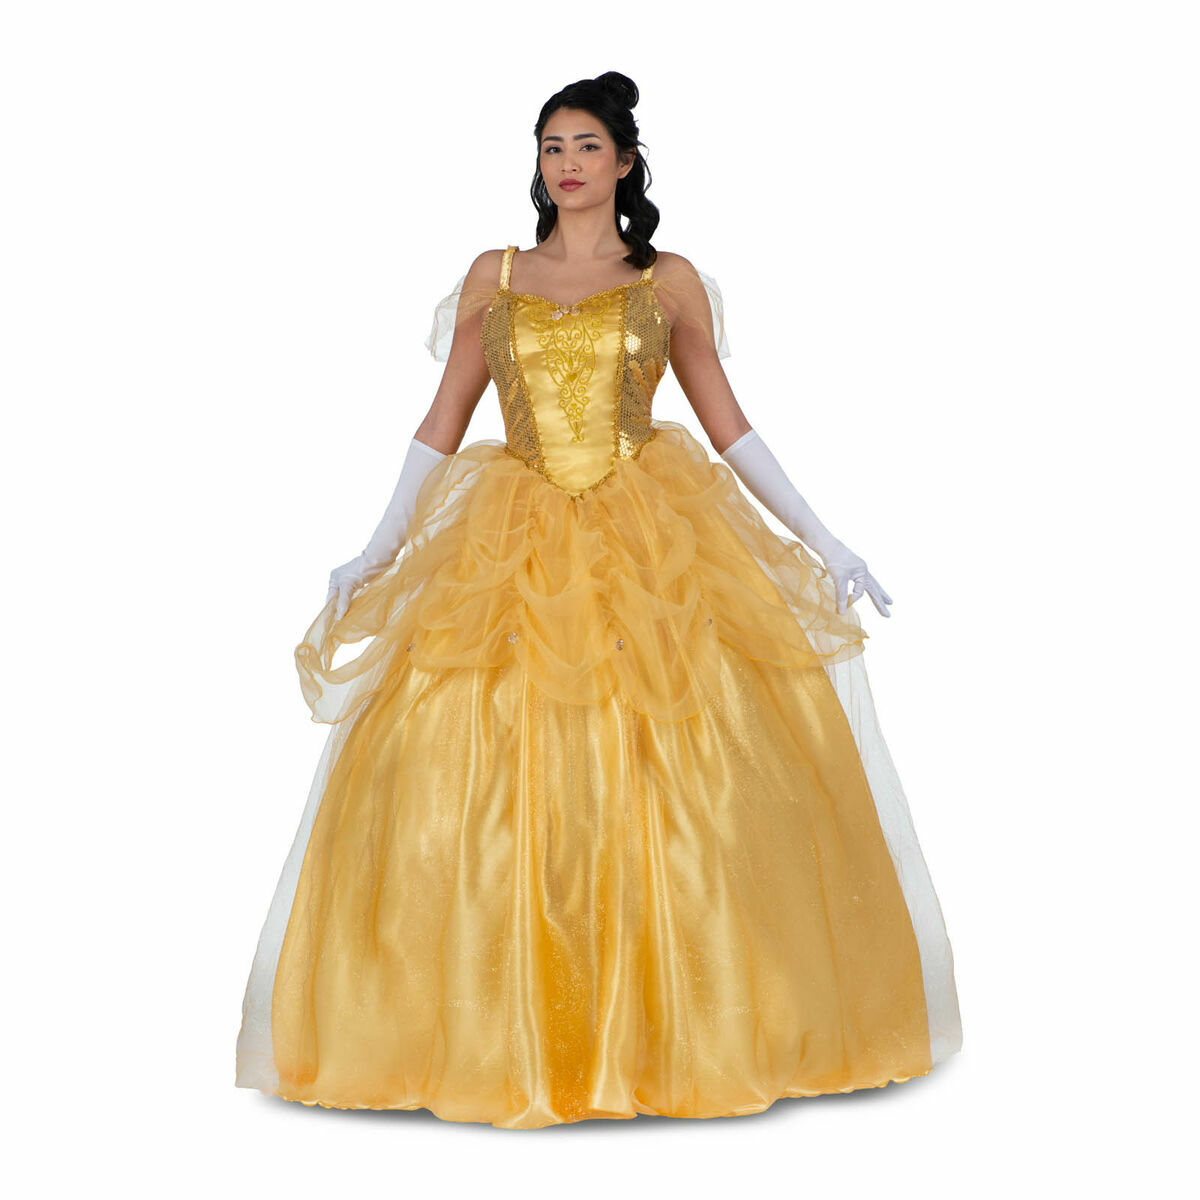 Kostüm für Erwachsene My Other Me Gelb Prinzessin Belle (3 Stücke) - L